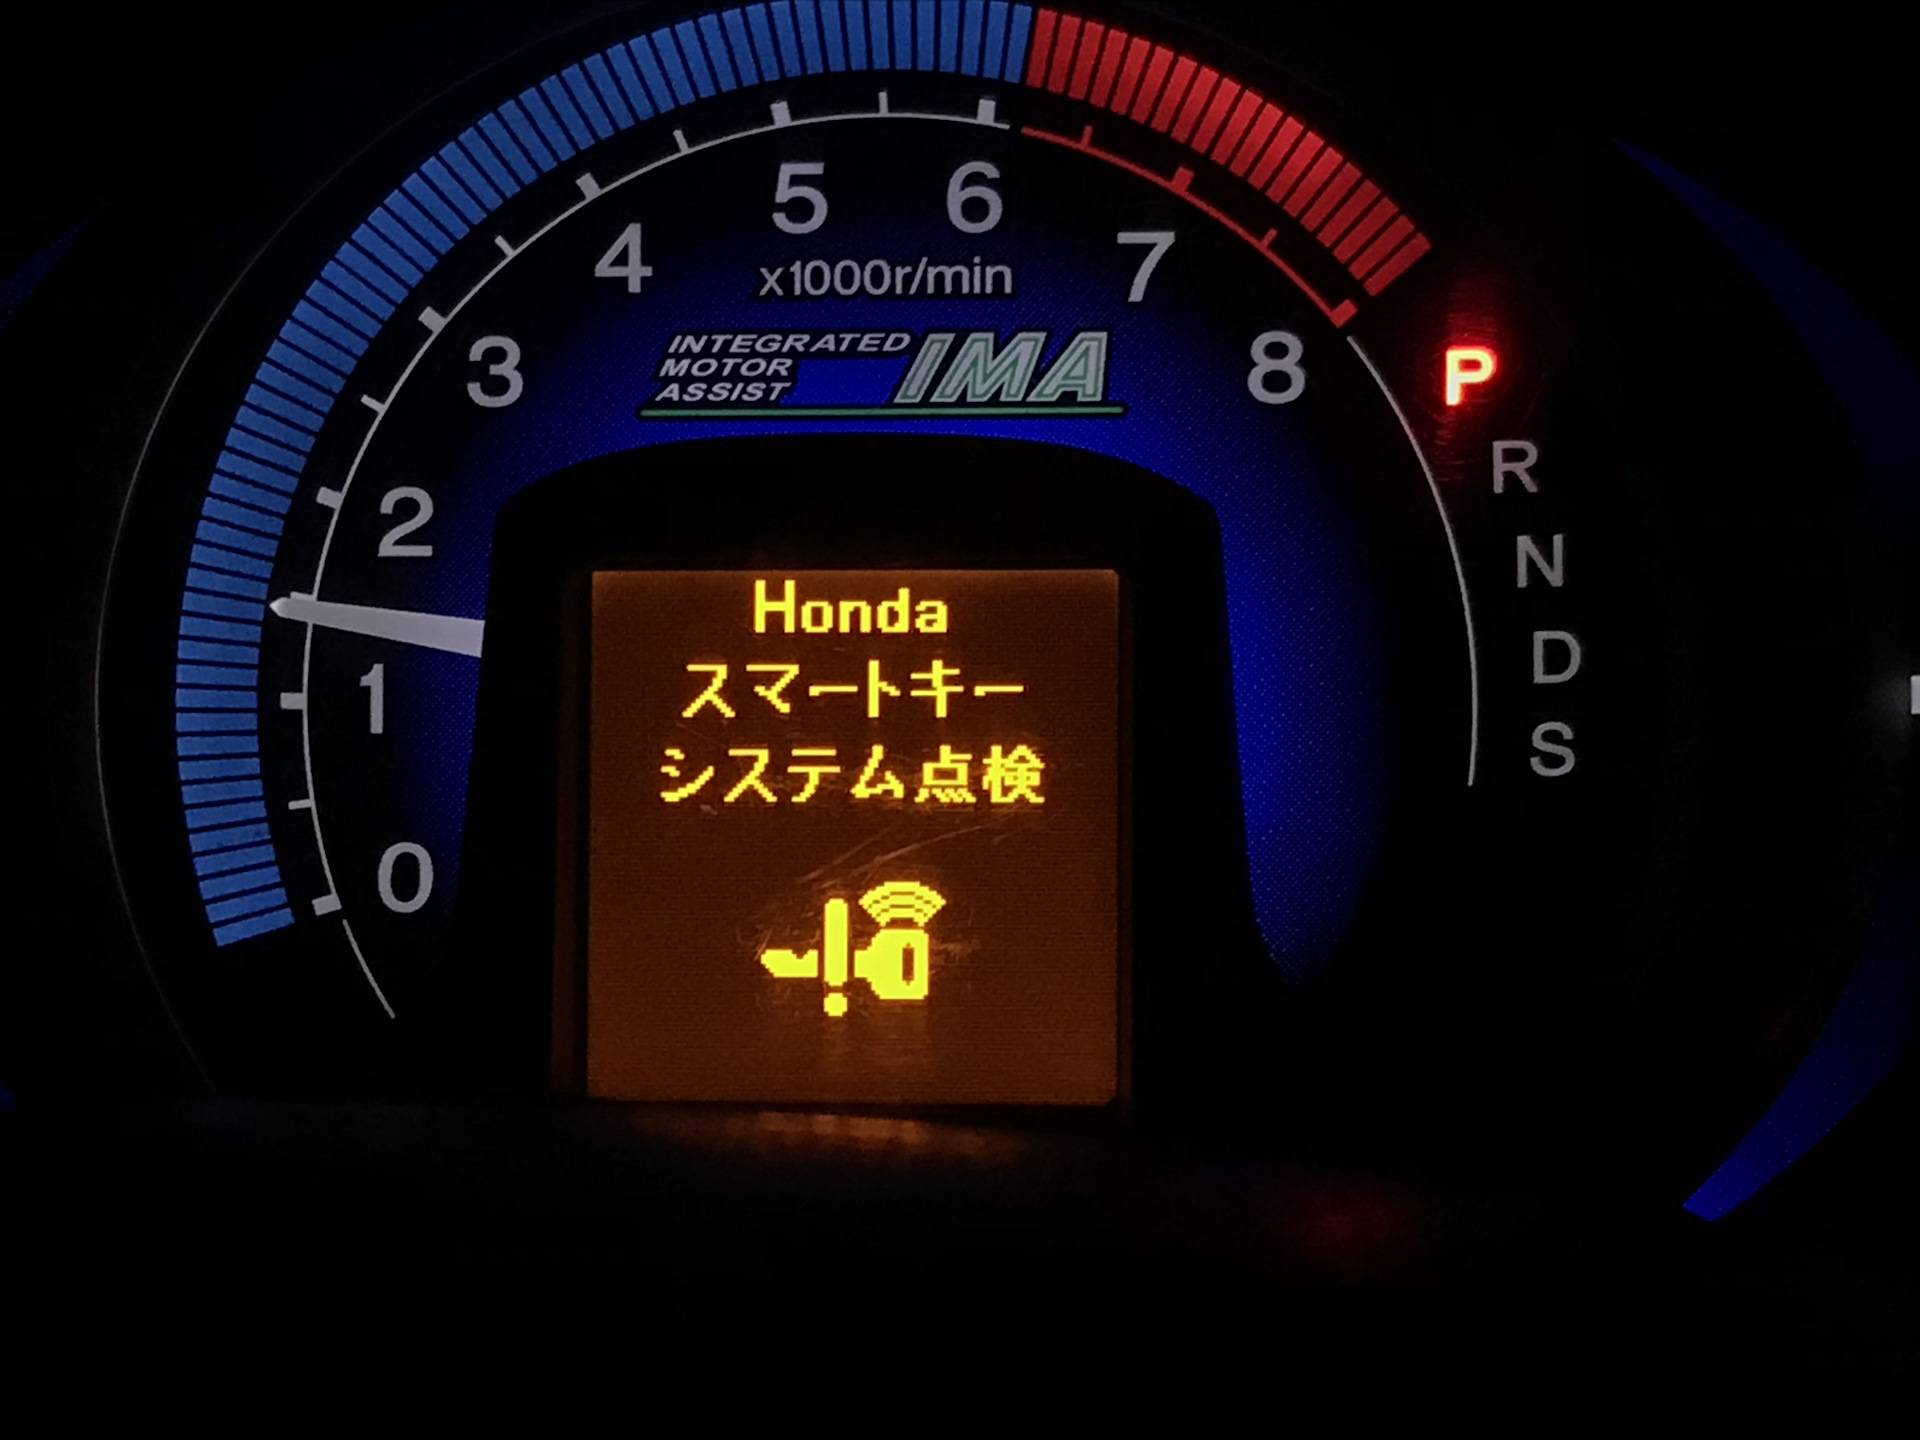 Фит обозначение. Датчики значки на панели Honda Fit 2002. Приборная панель Honda Insight 2009. Honda Fit 2017 индикатор батареи на приборной панели. Значки на панели Хонда фит гибрид.